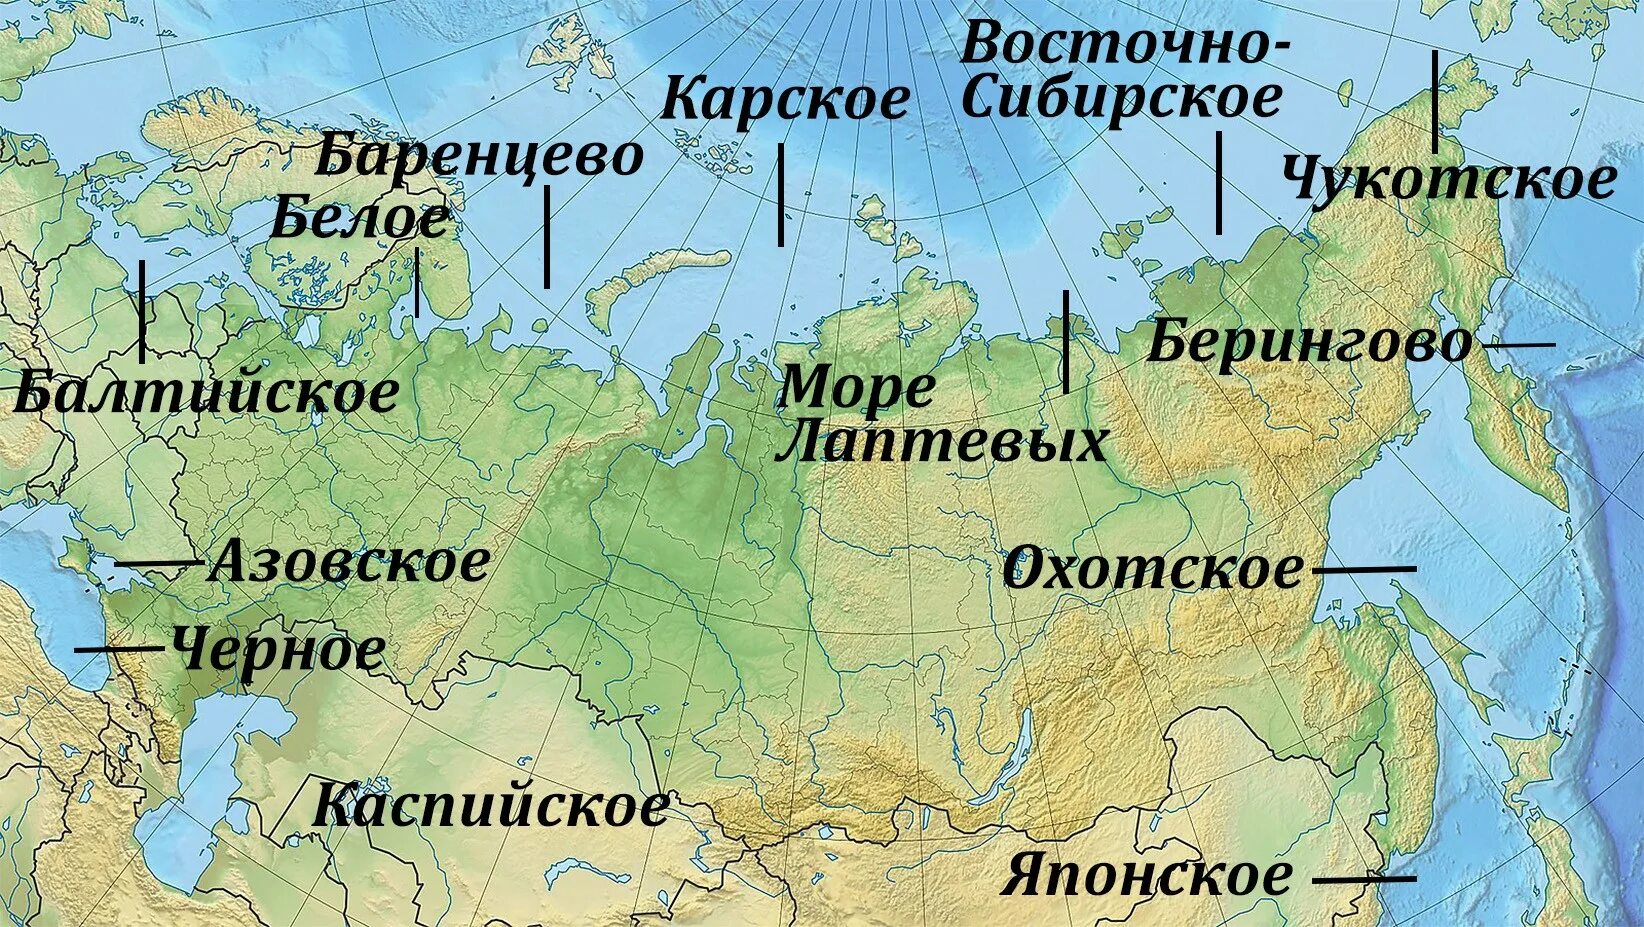 Моря и океаны омывающие Россию на карте. Моря омывающие Россию. Моря России на карте. Моря омывающие Россию на карте. Океаны окружающие россию